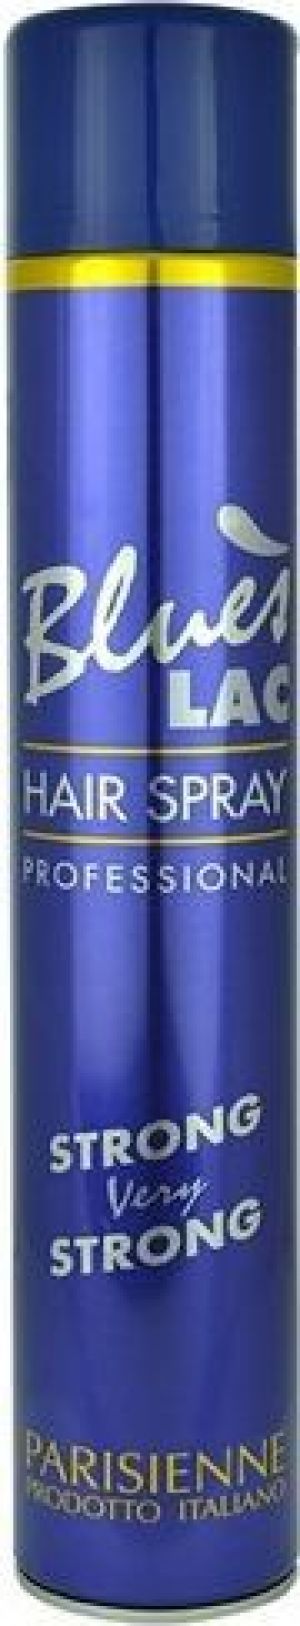 Kallos Blues Lac Hair Spray 750ml 1